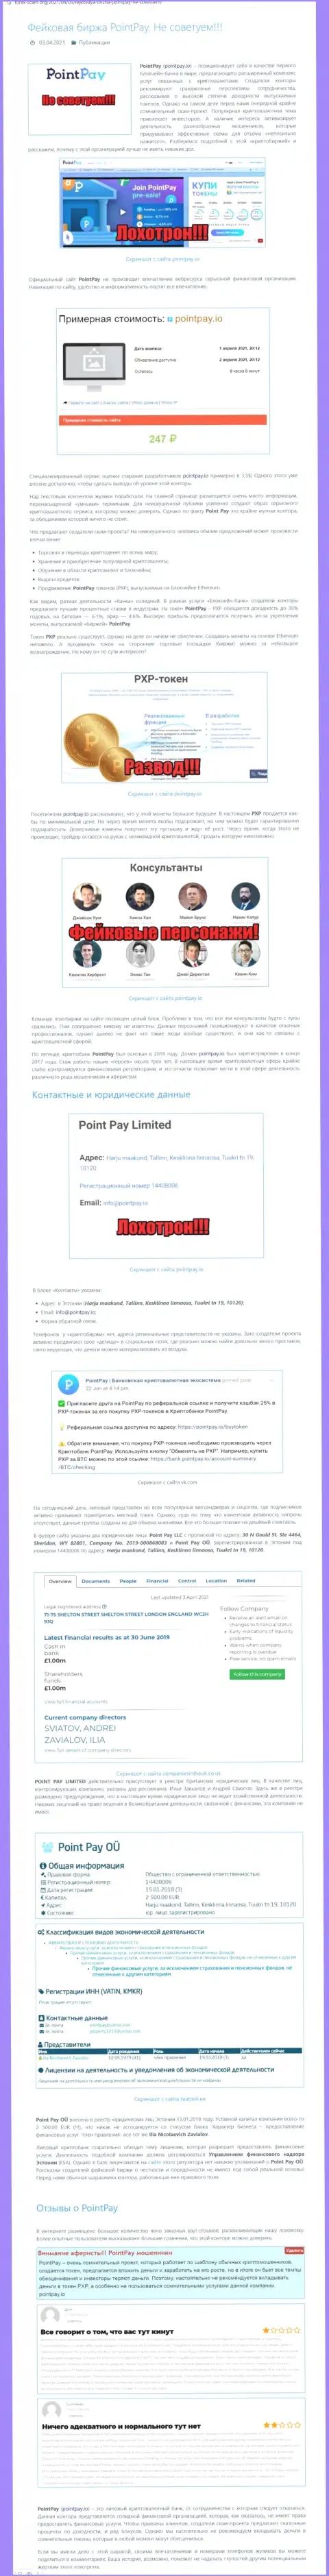 ПоинтПэй Ио обманывают и вложенные деньги собственным клиентам отдавать отказываются - обзор компании